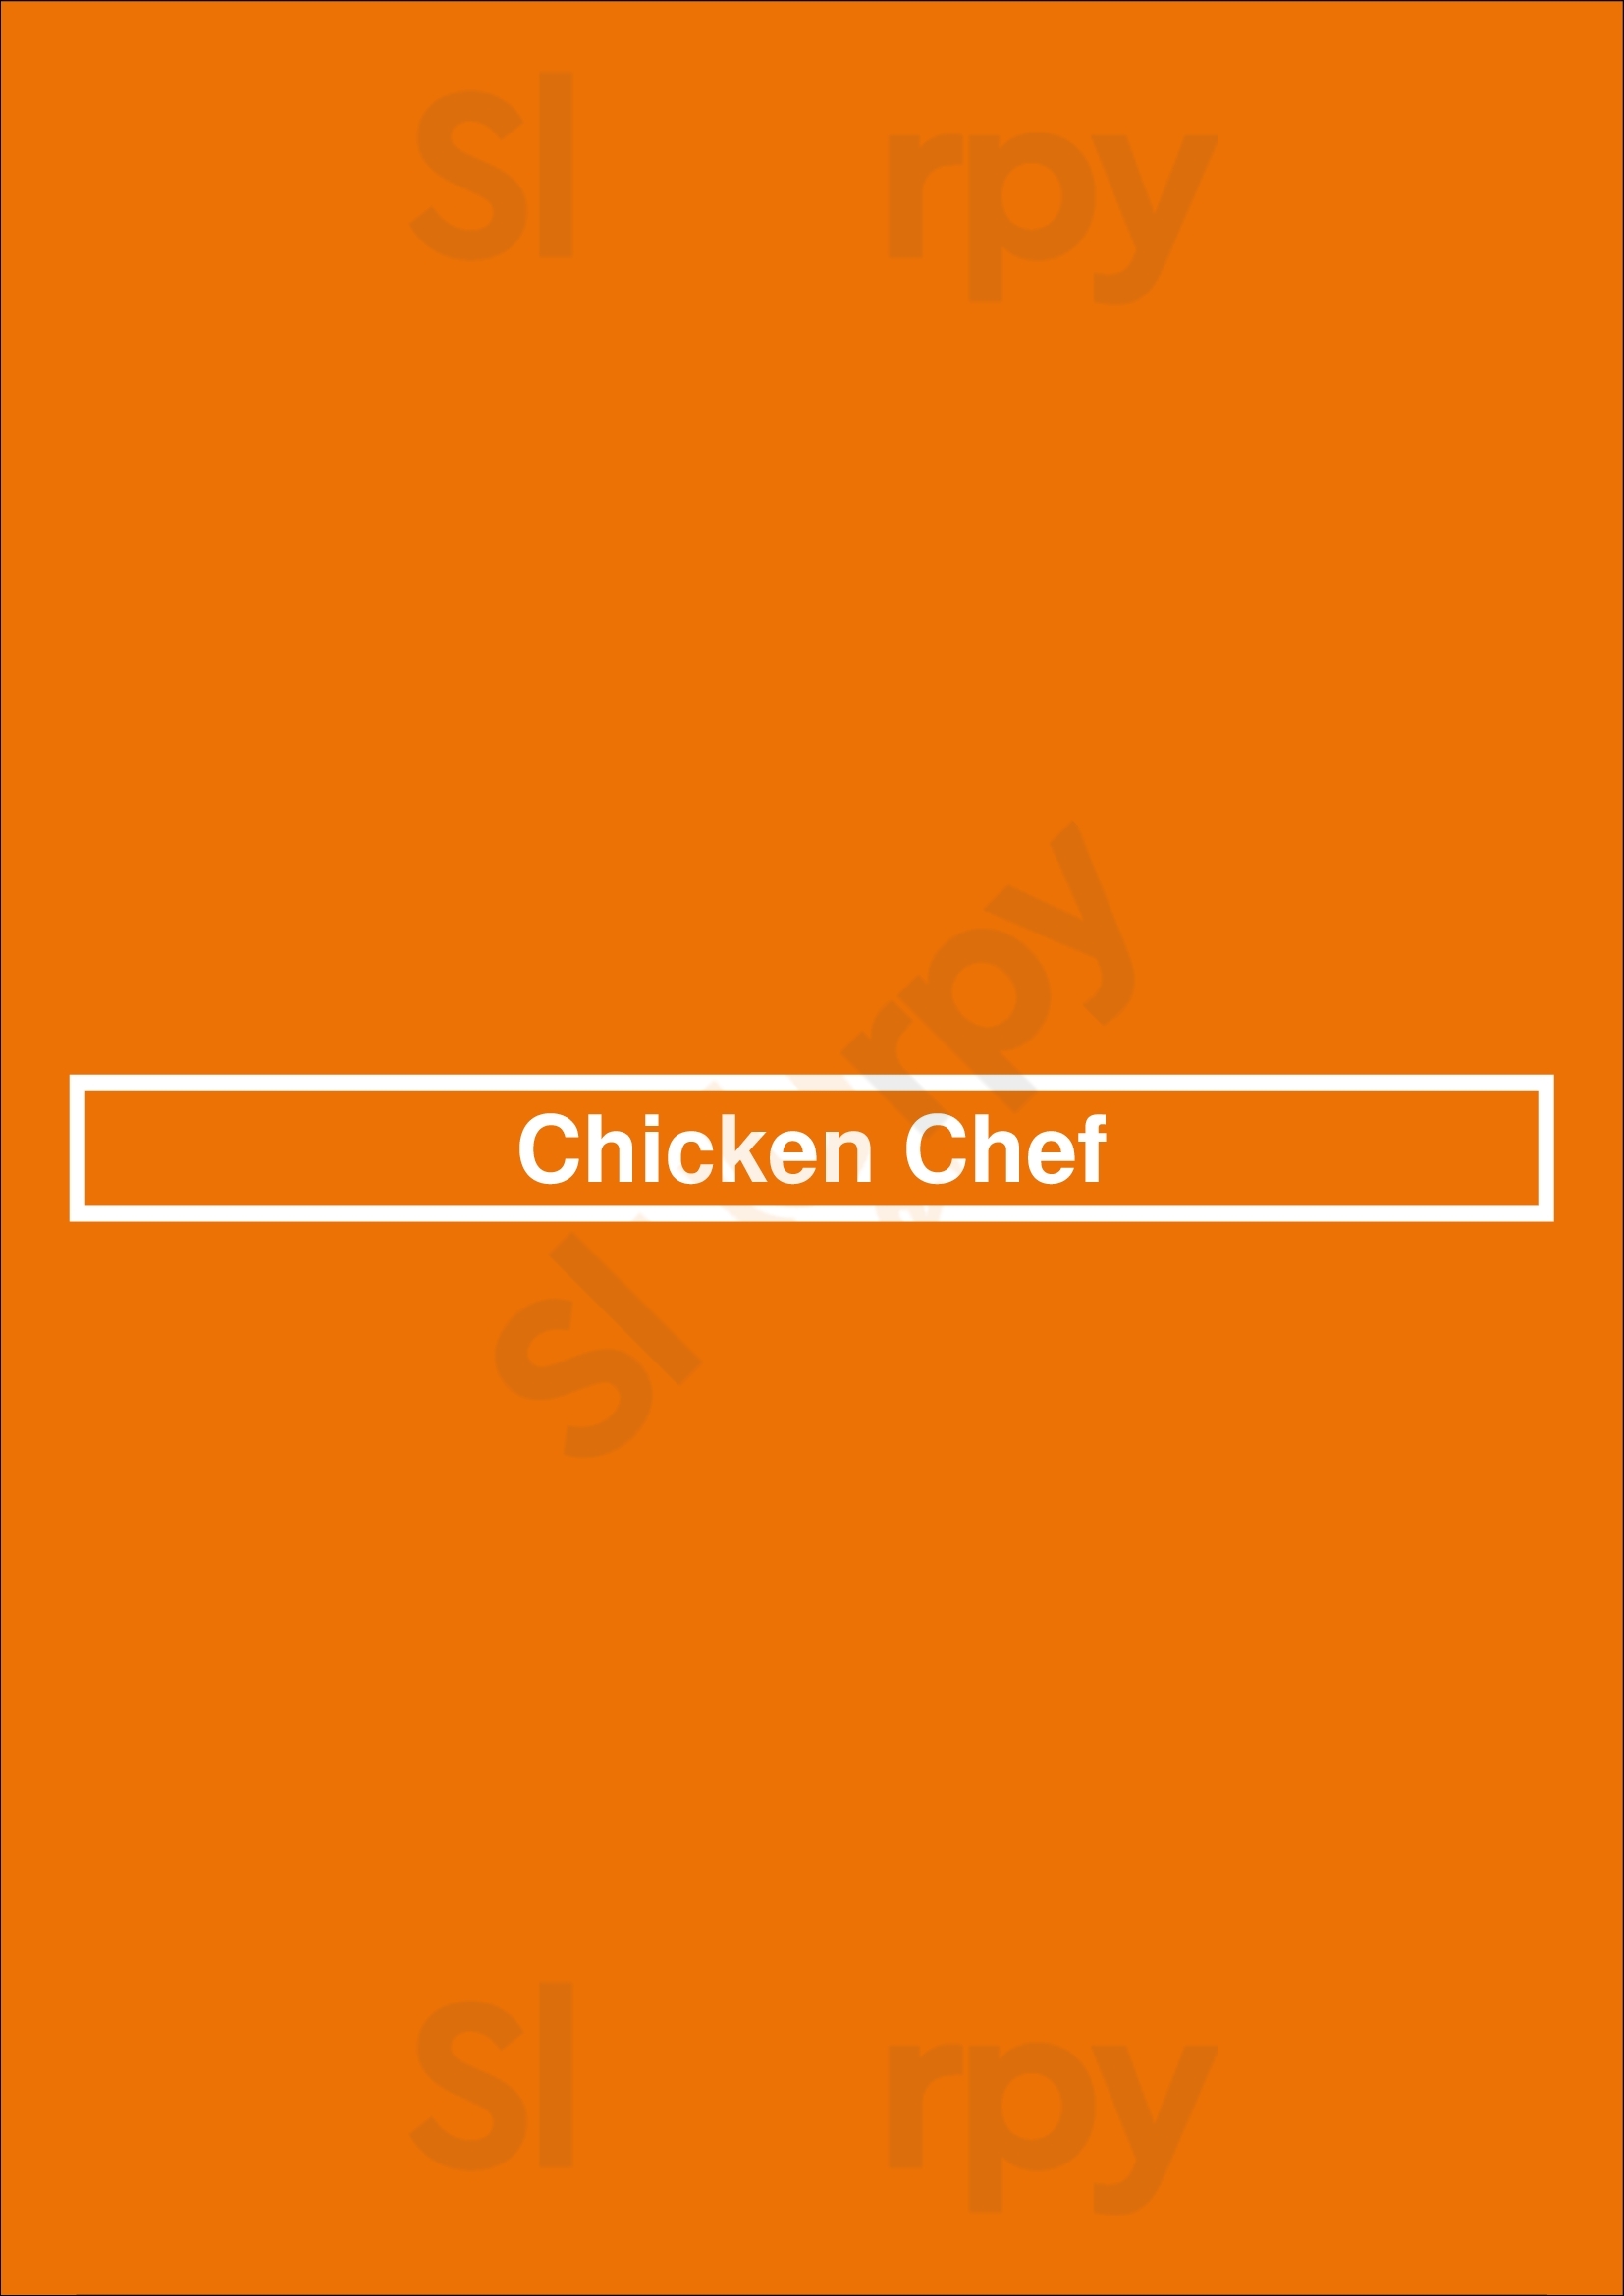 Chicken Chef Winnipeg Menu - 1